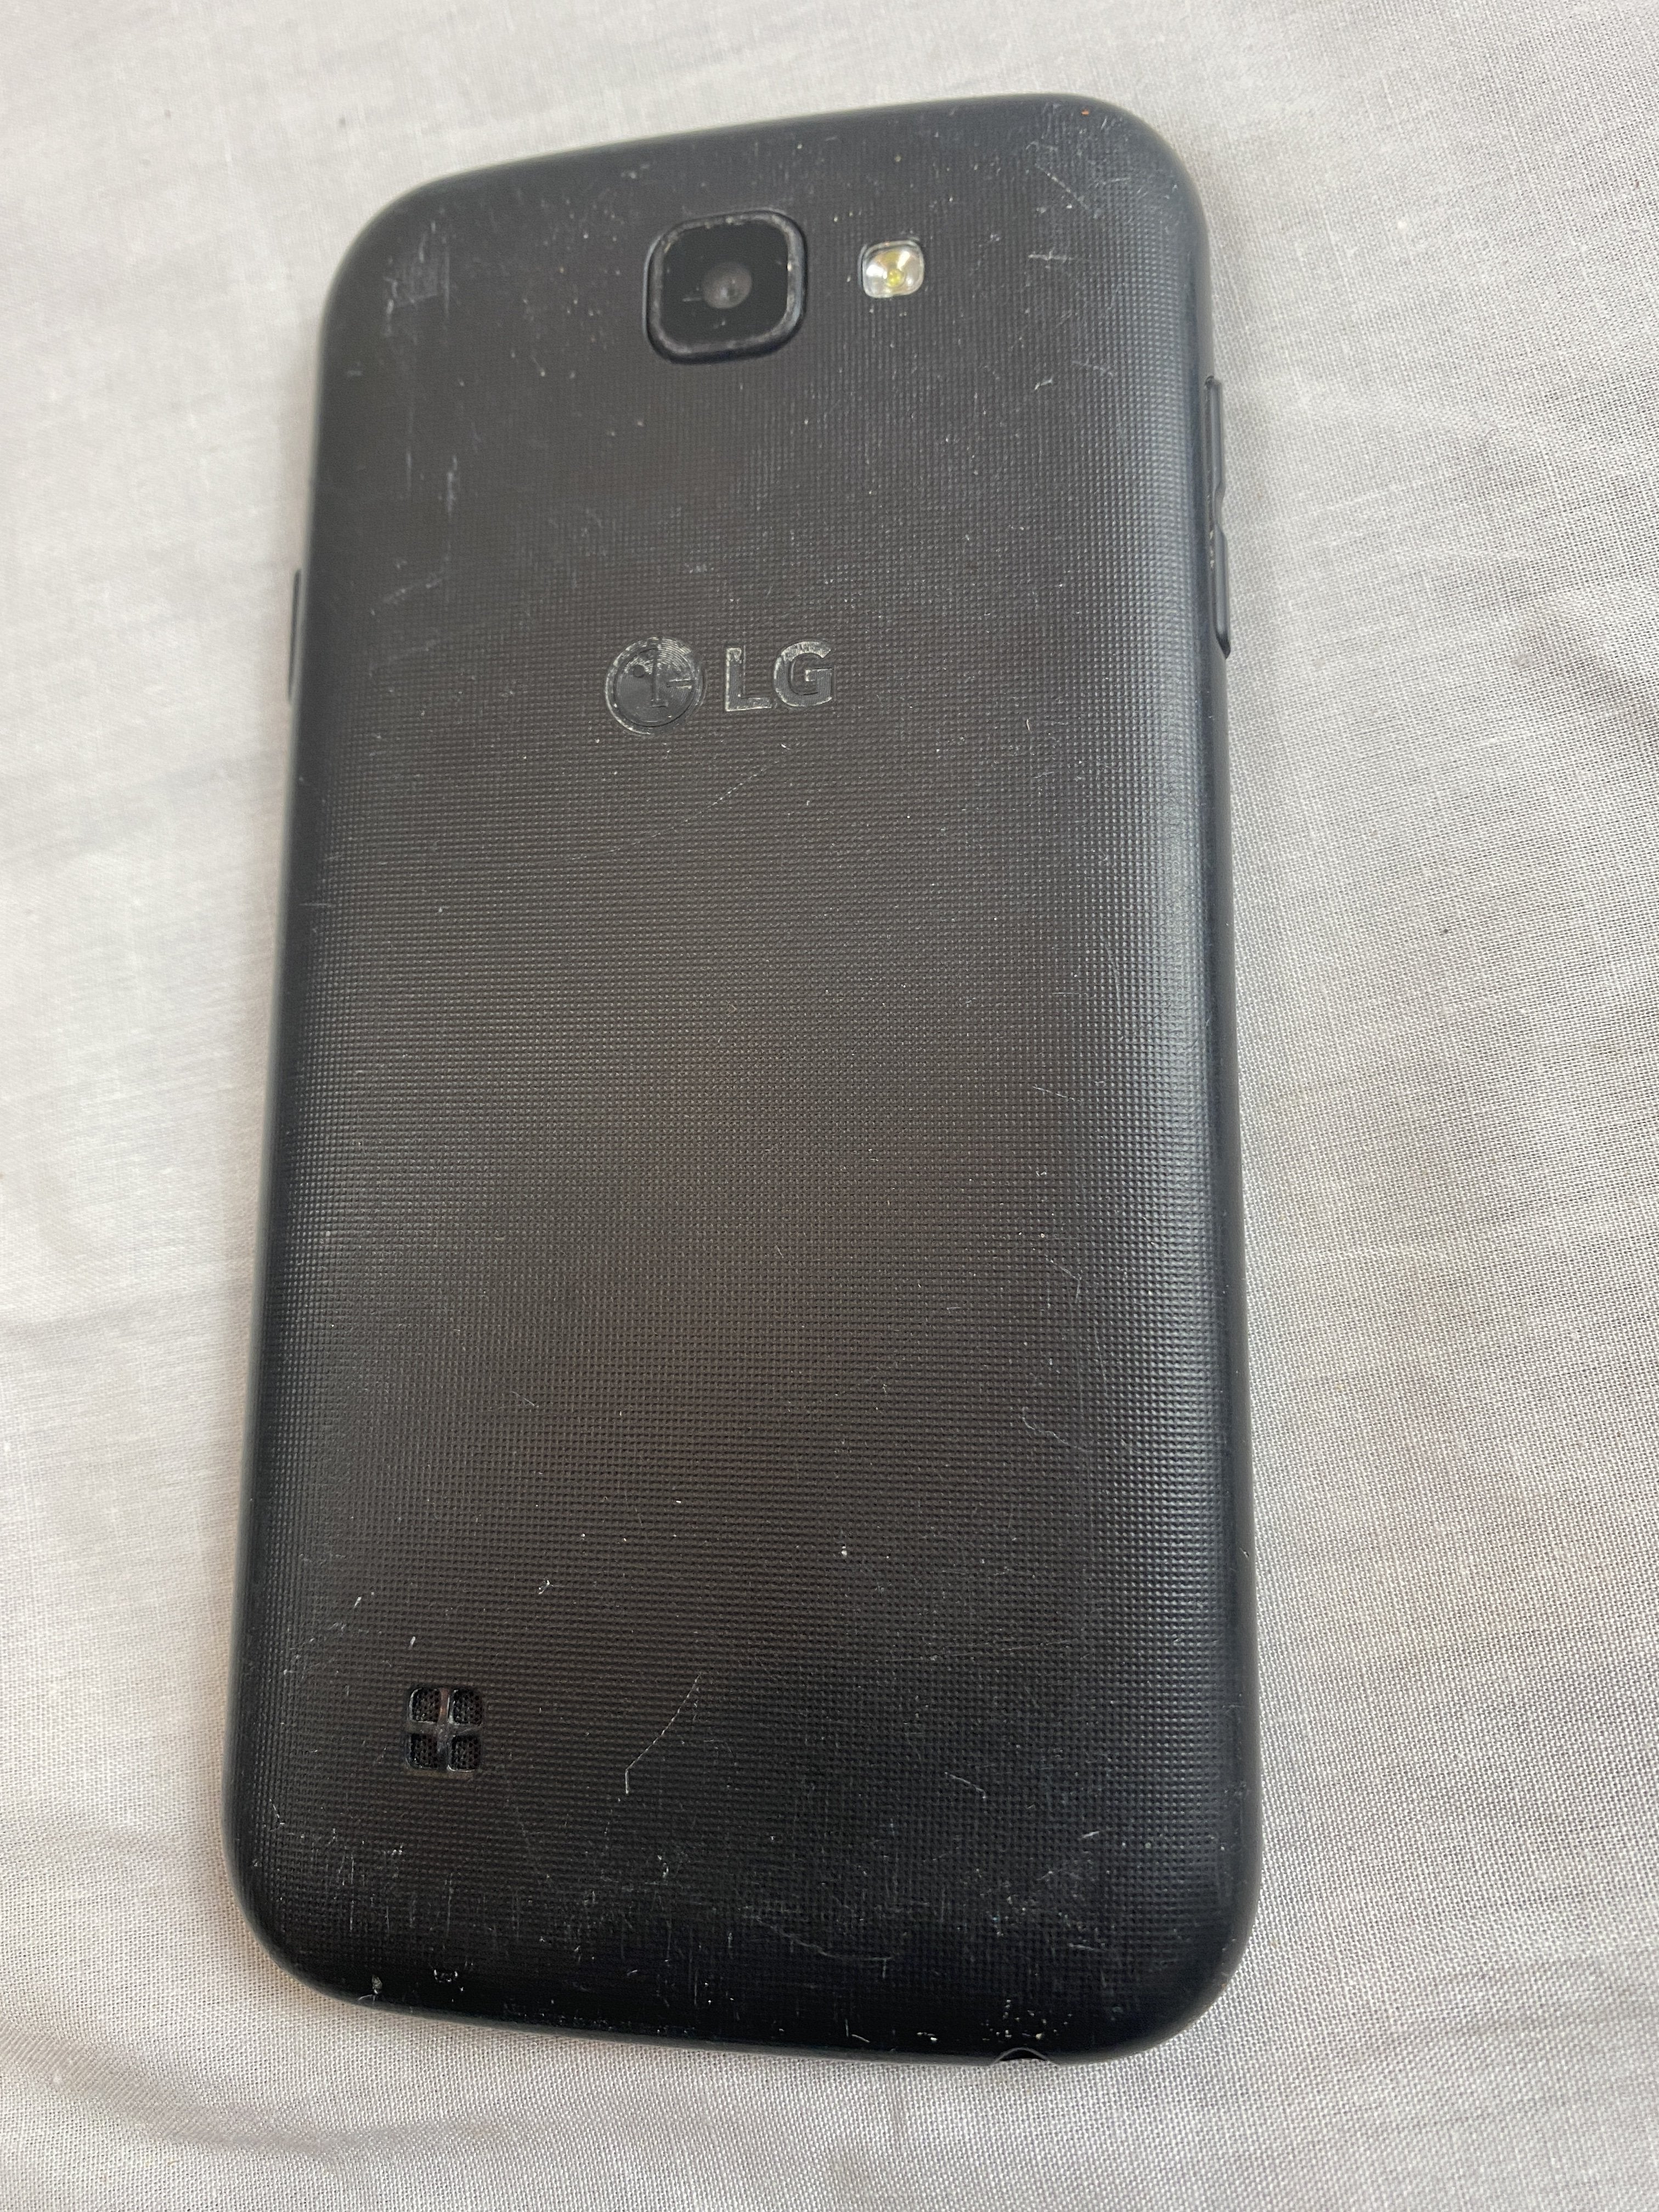 LG Phone 001